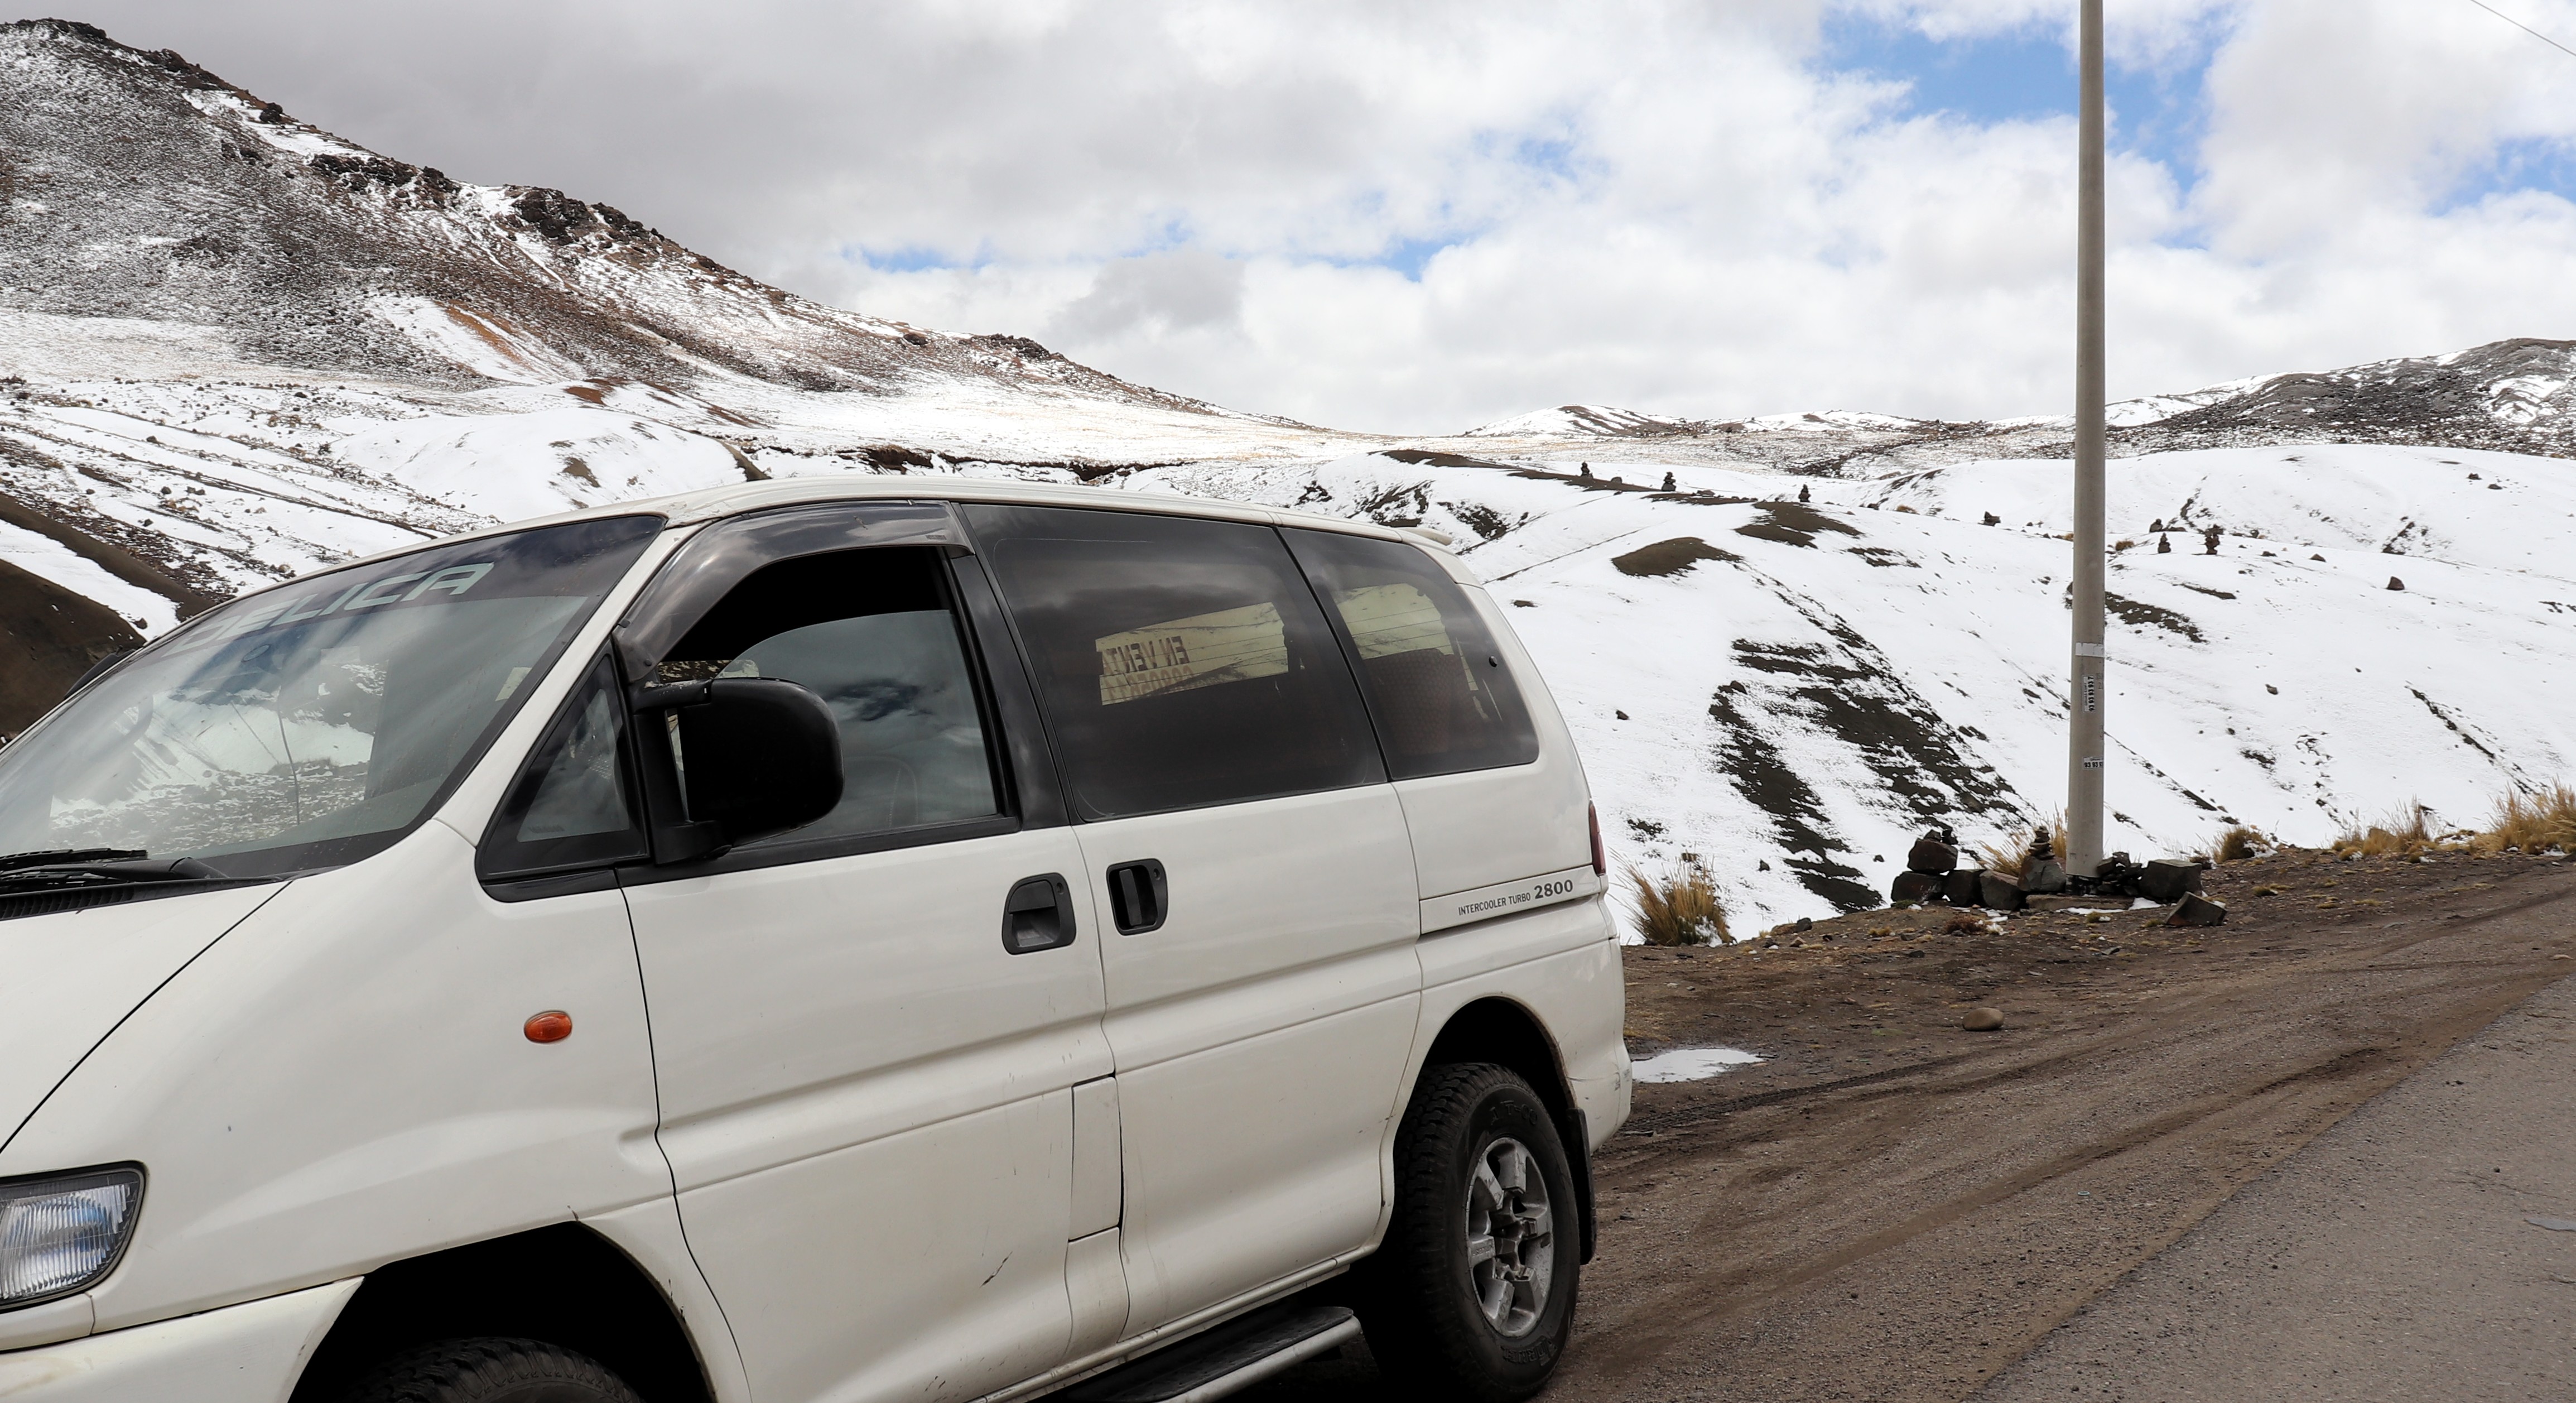 Travesía Cusco - Rancho Grande, Delica97 en el Abra Apacheta a 4750 msnm